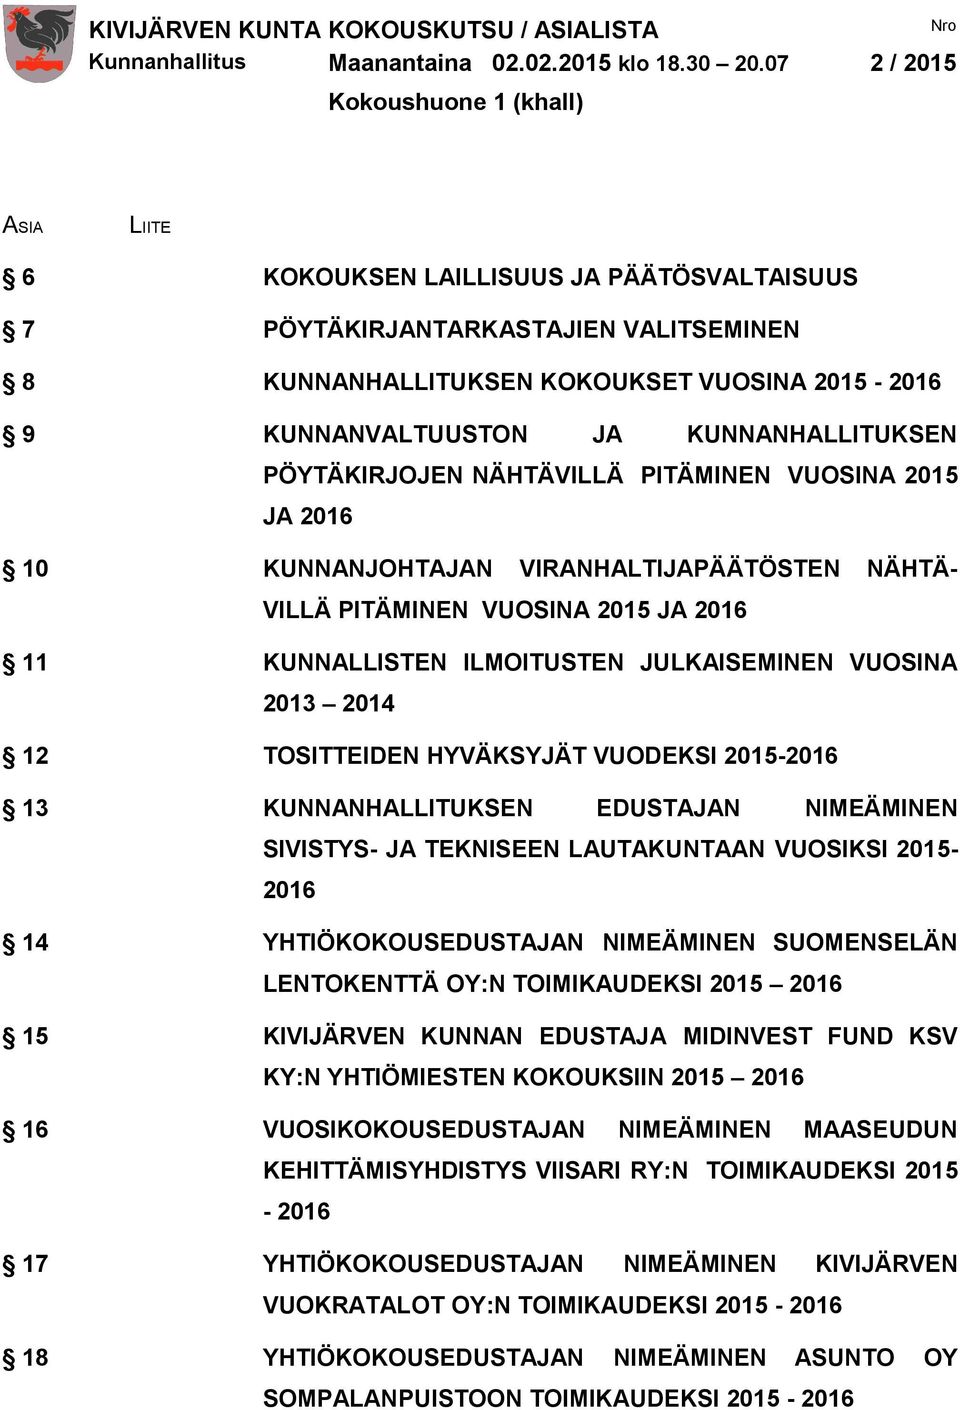 JA KUNNANHALLITUKSEN PÖYTÄKIRJOJEN NÄHTÄVILLÄ PITÄMINEN VUOSINA 2015 JA 2016 10 KUNNANJOHTAJAN VIRANHALTIJAPÄÄTÖSTEN NÄHTÄ- VILLÄ PITÄMINEN VUOSINA 2015 JA 2016 11 KUNNALLISTEN ILMOITUSTEN